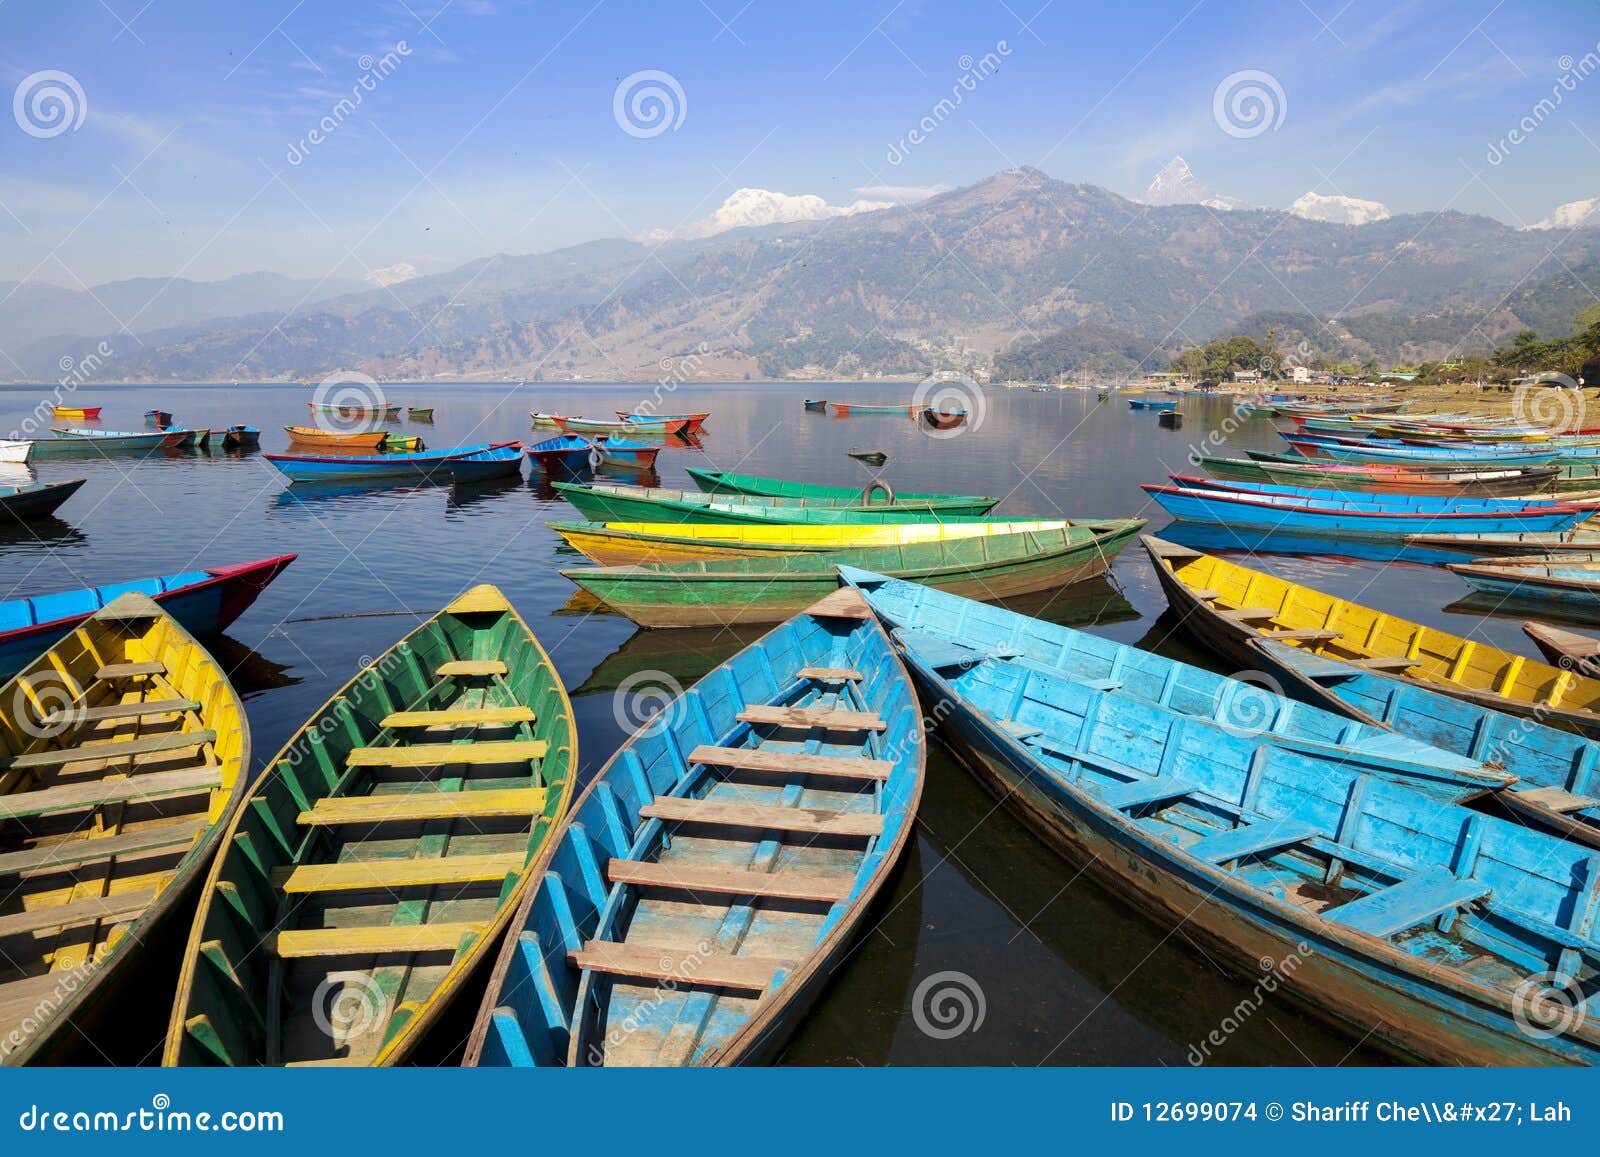 lake phewa, pokhara, nepal